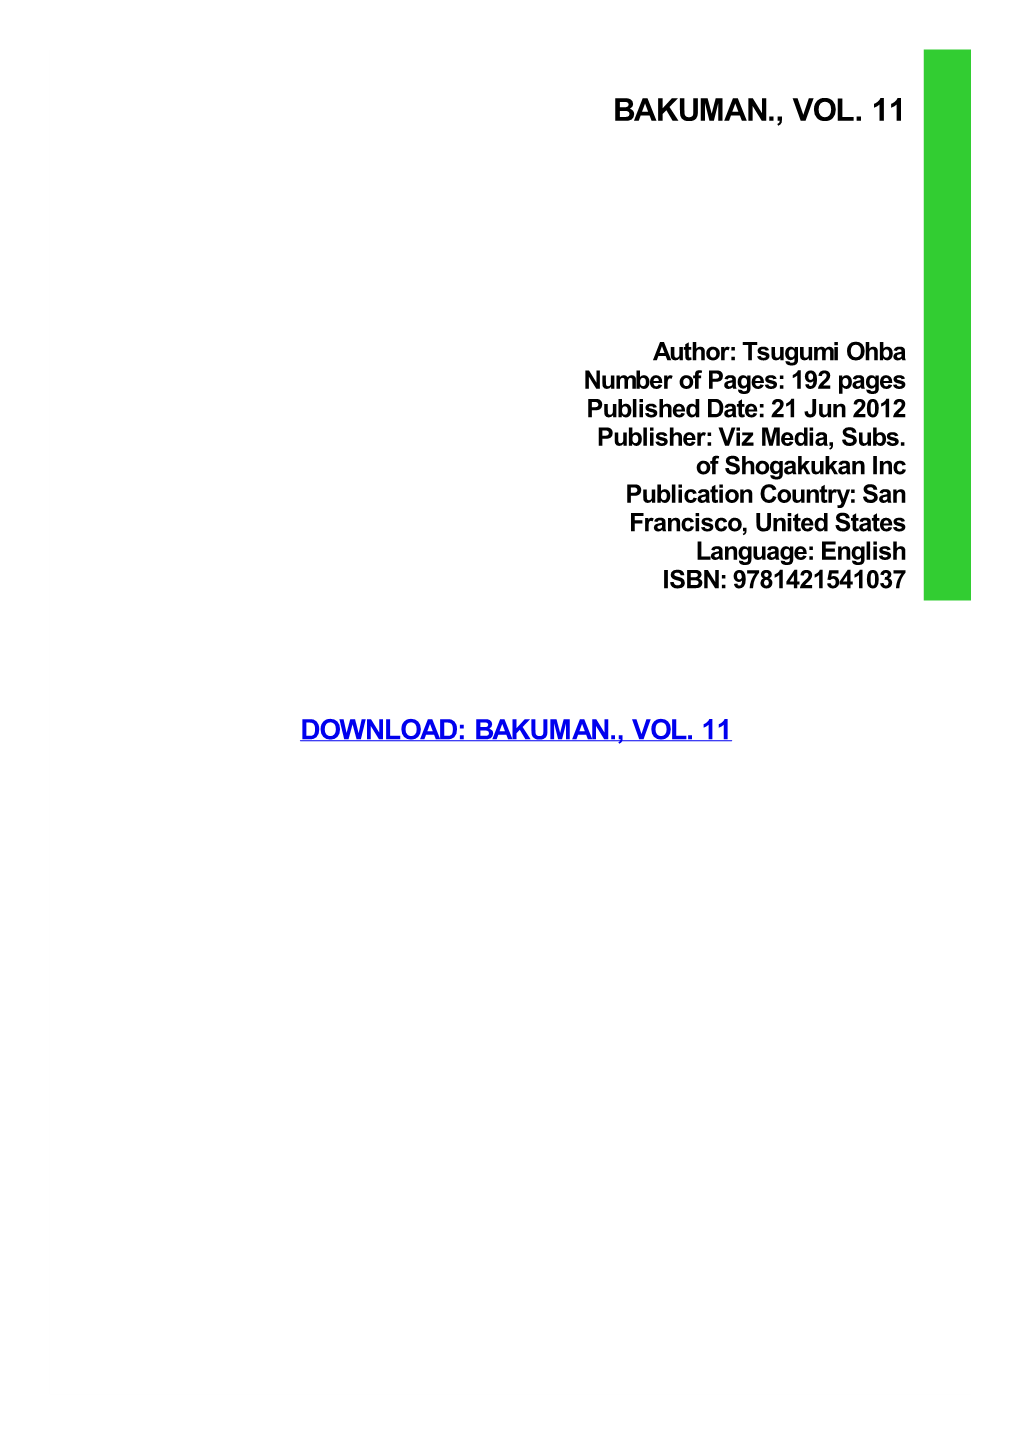 Bakuman., Vol. 11 Download Free